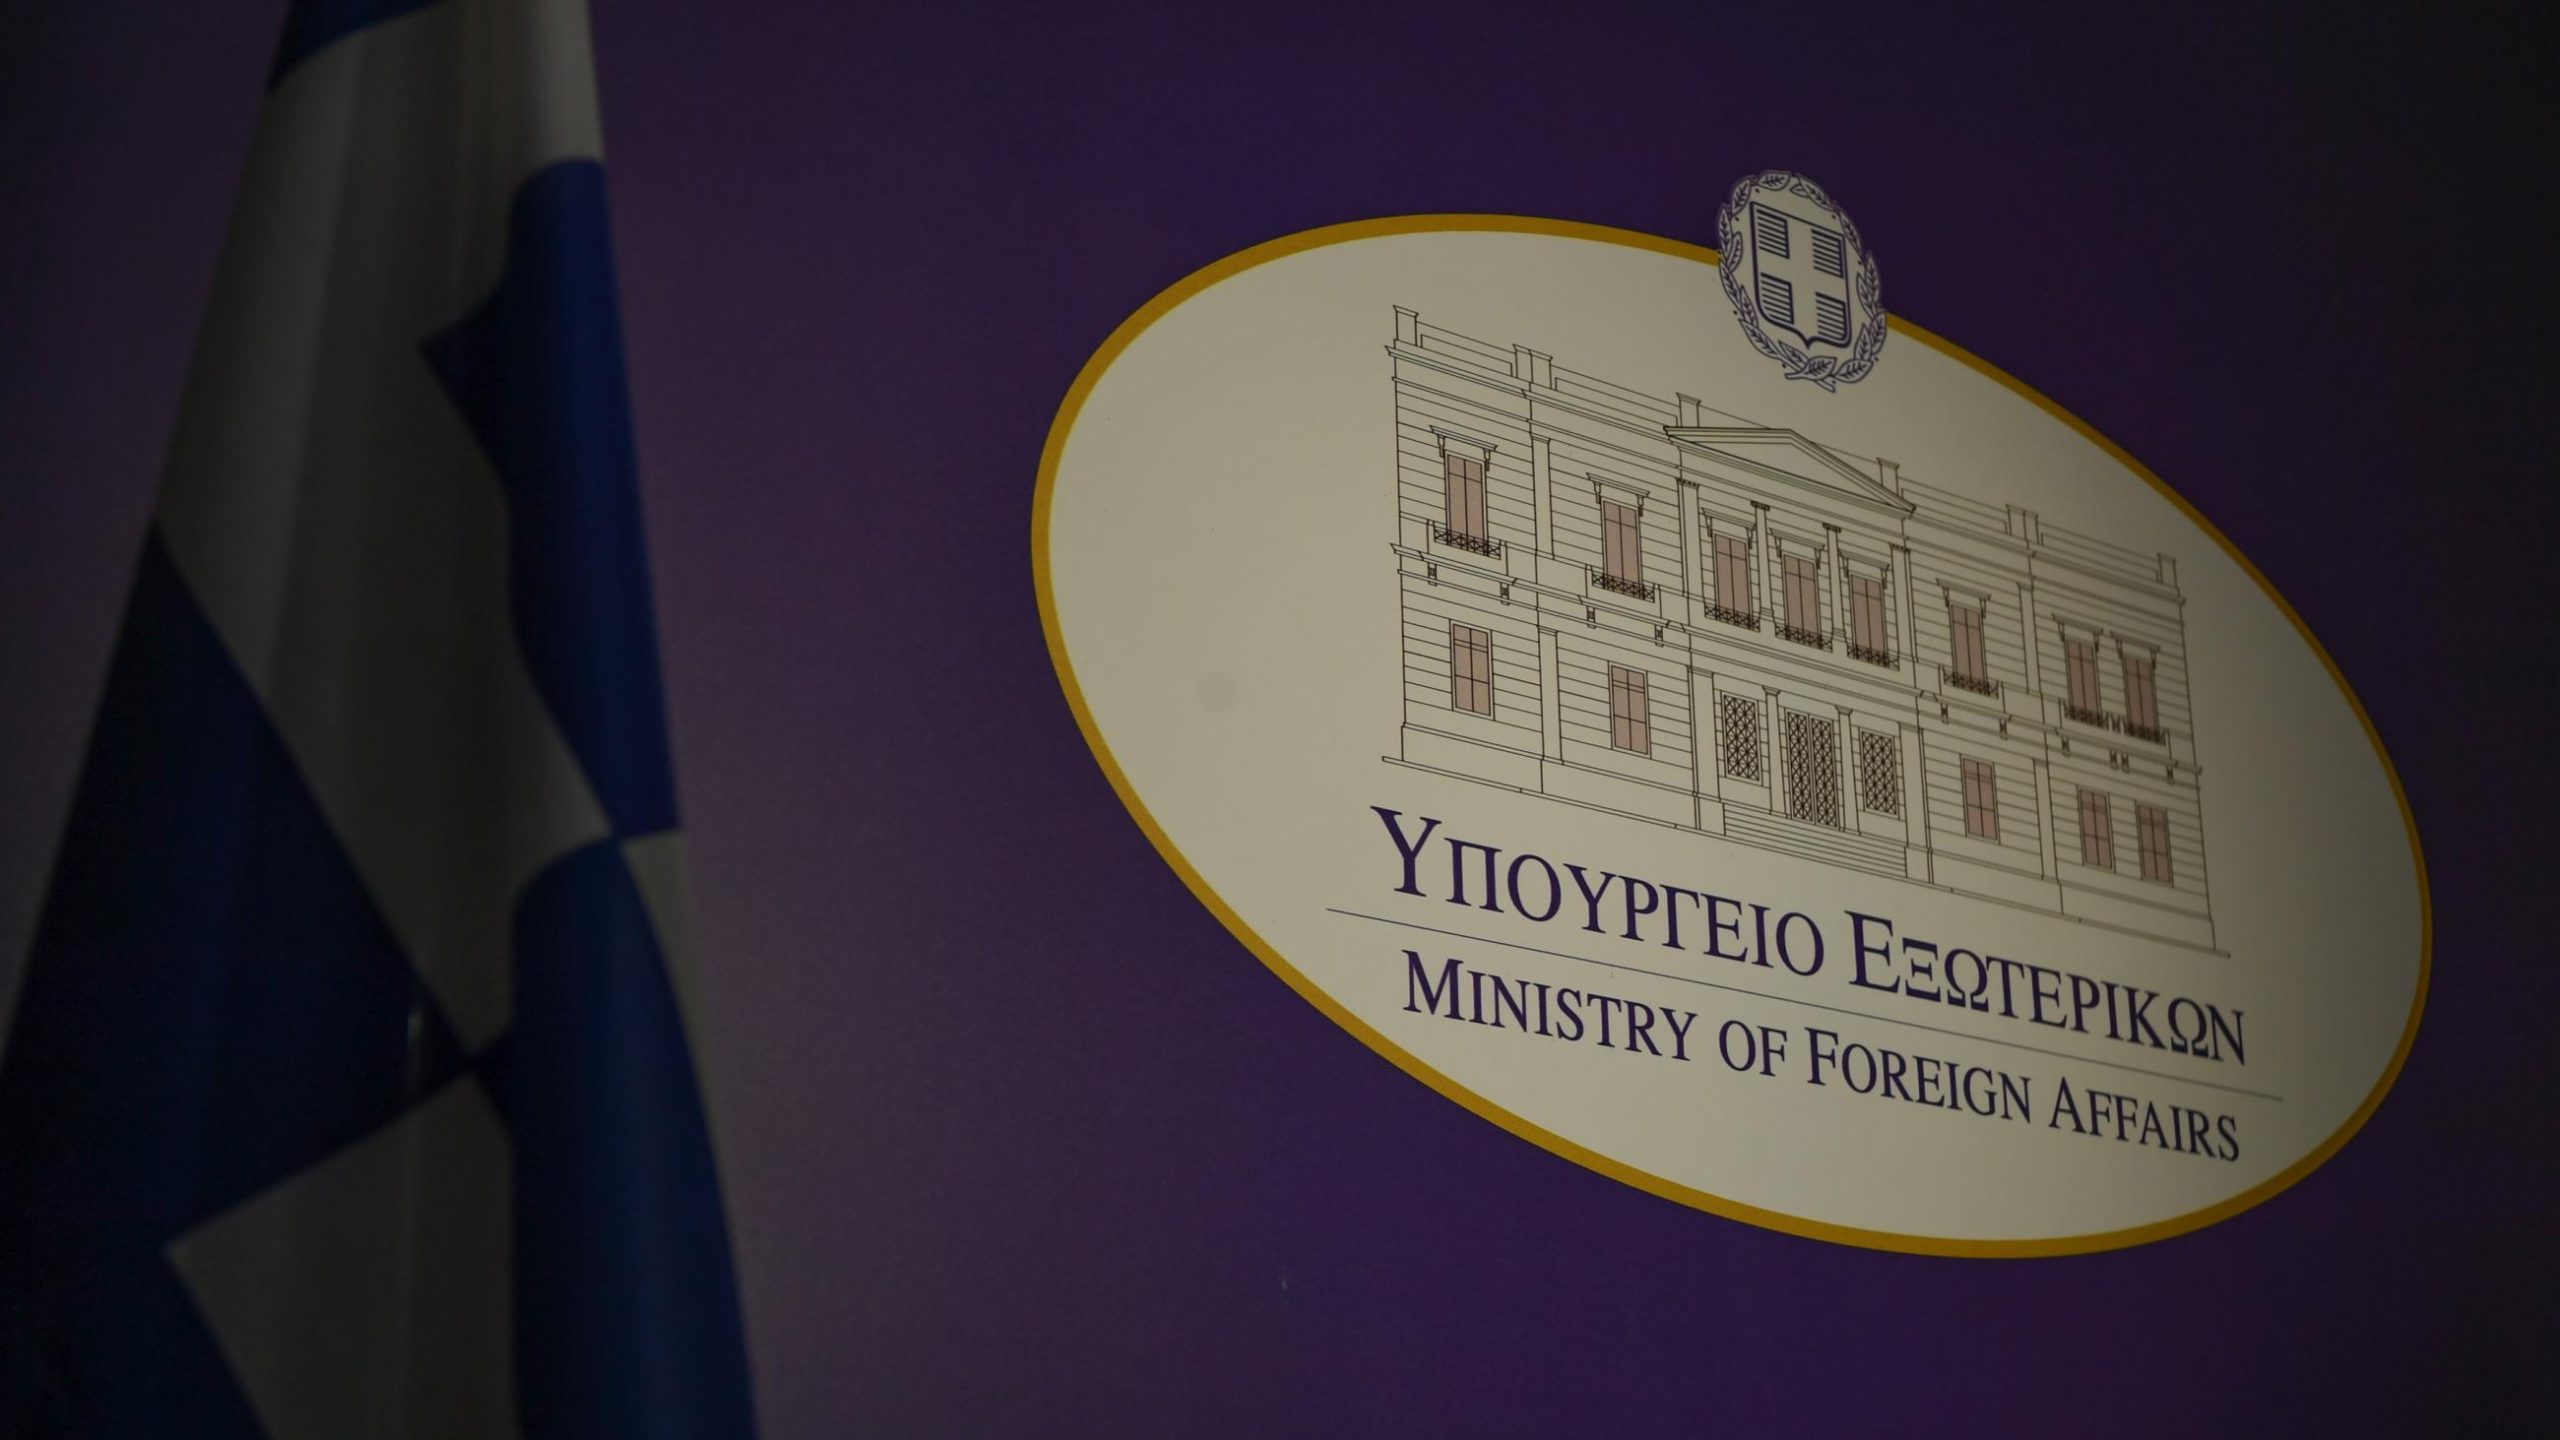 Το Yπουργείο Εξωτερικών απαντά σε τουρκική προβοκάτσια περί «σύλληψης Έλληνα κατασκόπου»